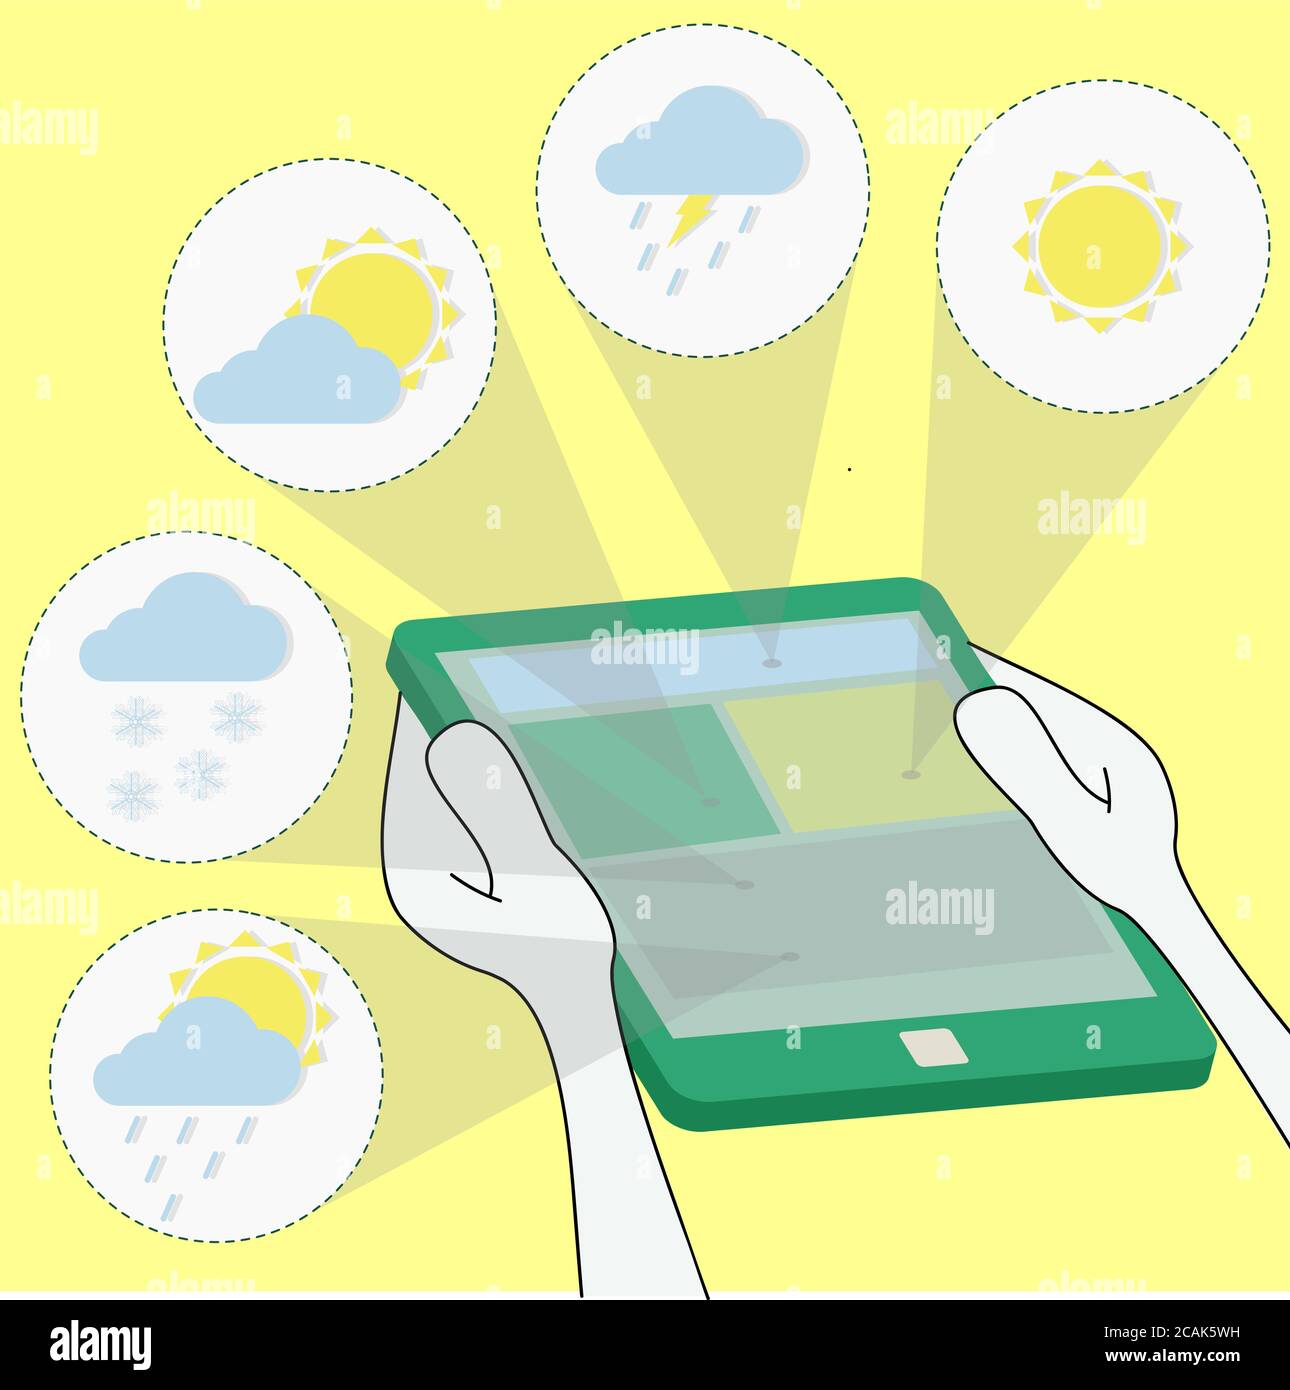 Meteorologie und Wettervorhersage über das Tablet - Regen, Sonne, Bewölkung, Schnee, Sturm. Surfen auf dem Tablet. Stock Vektor